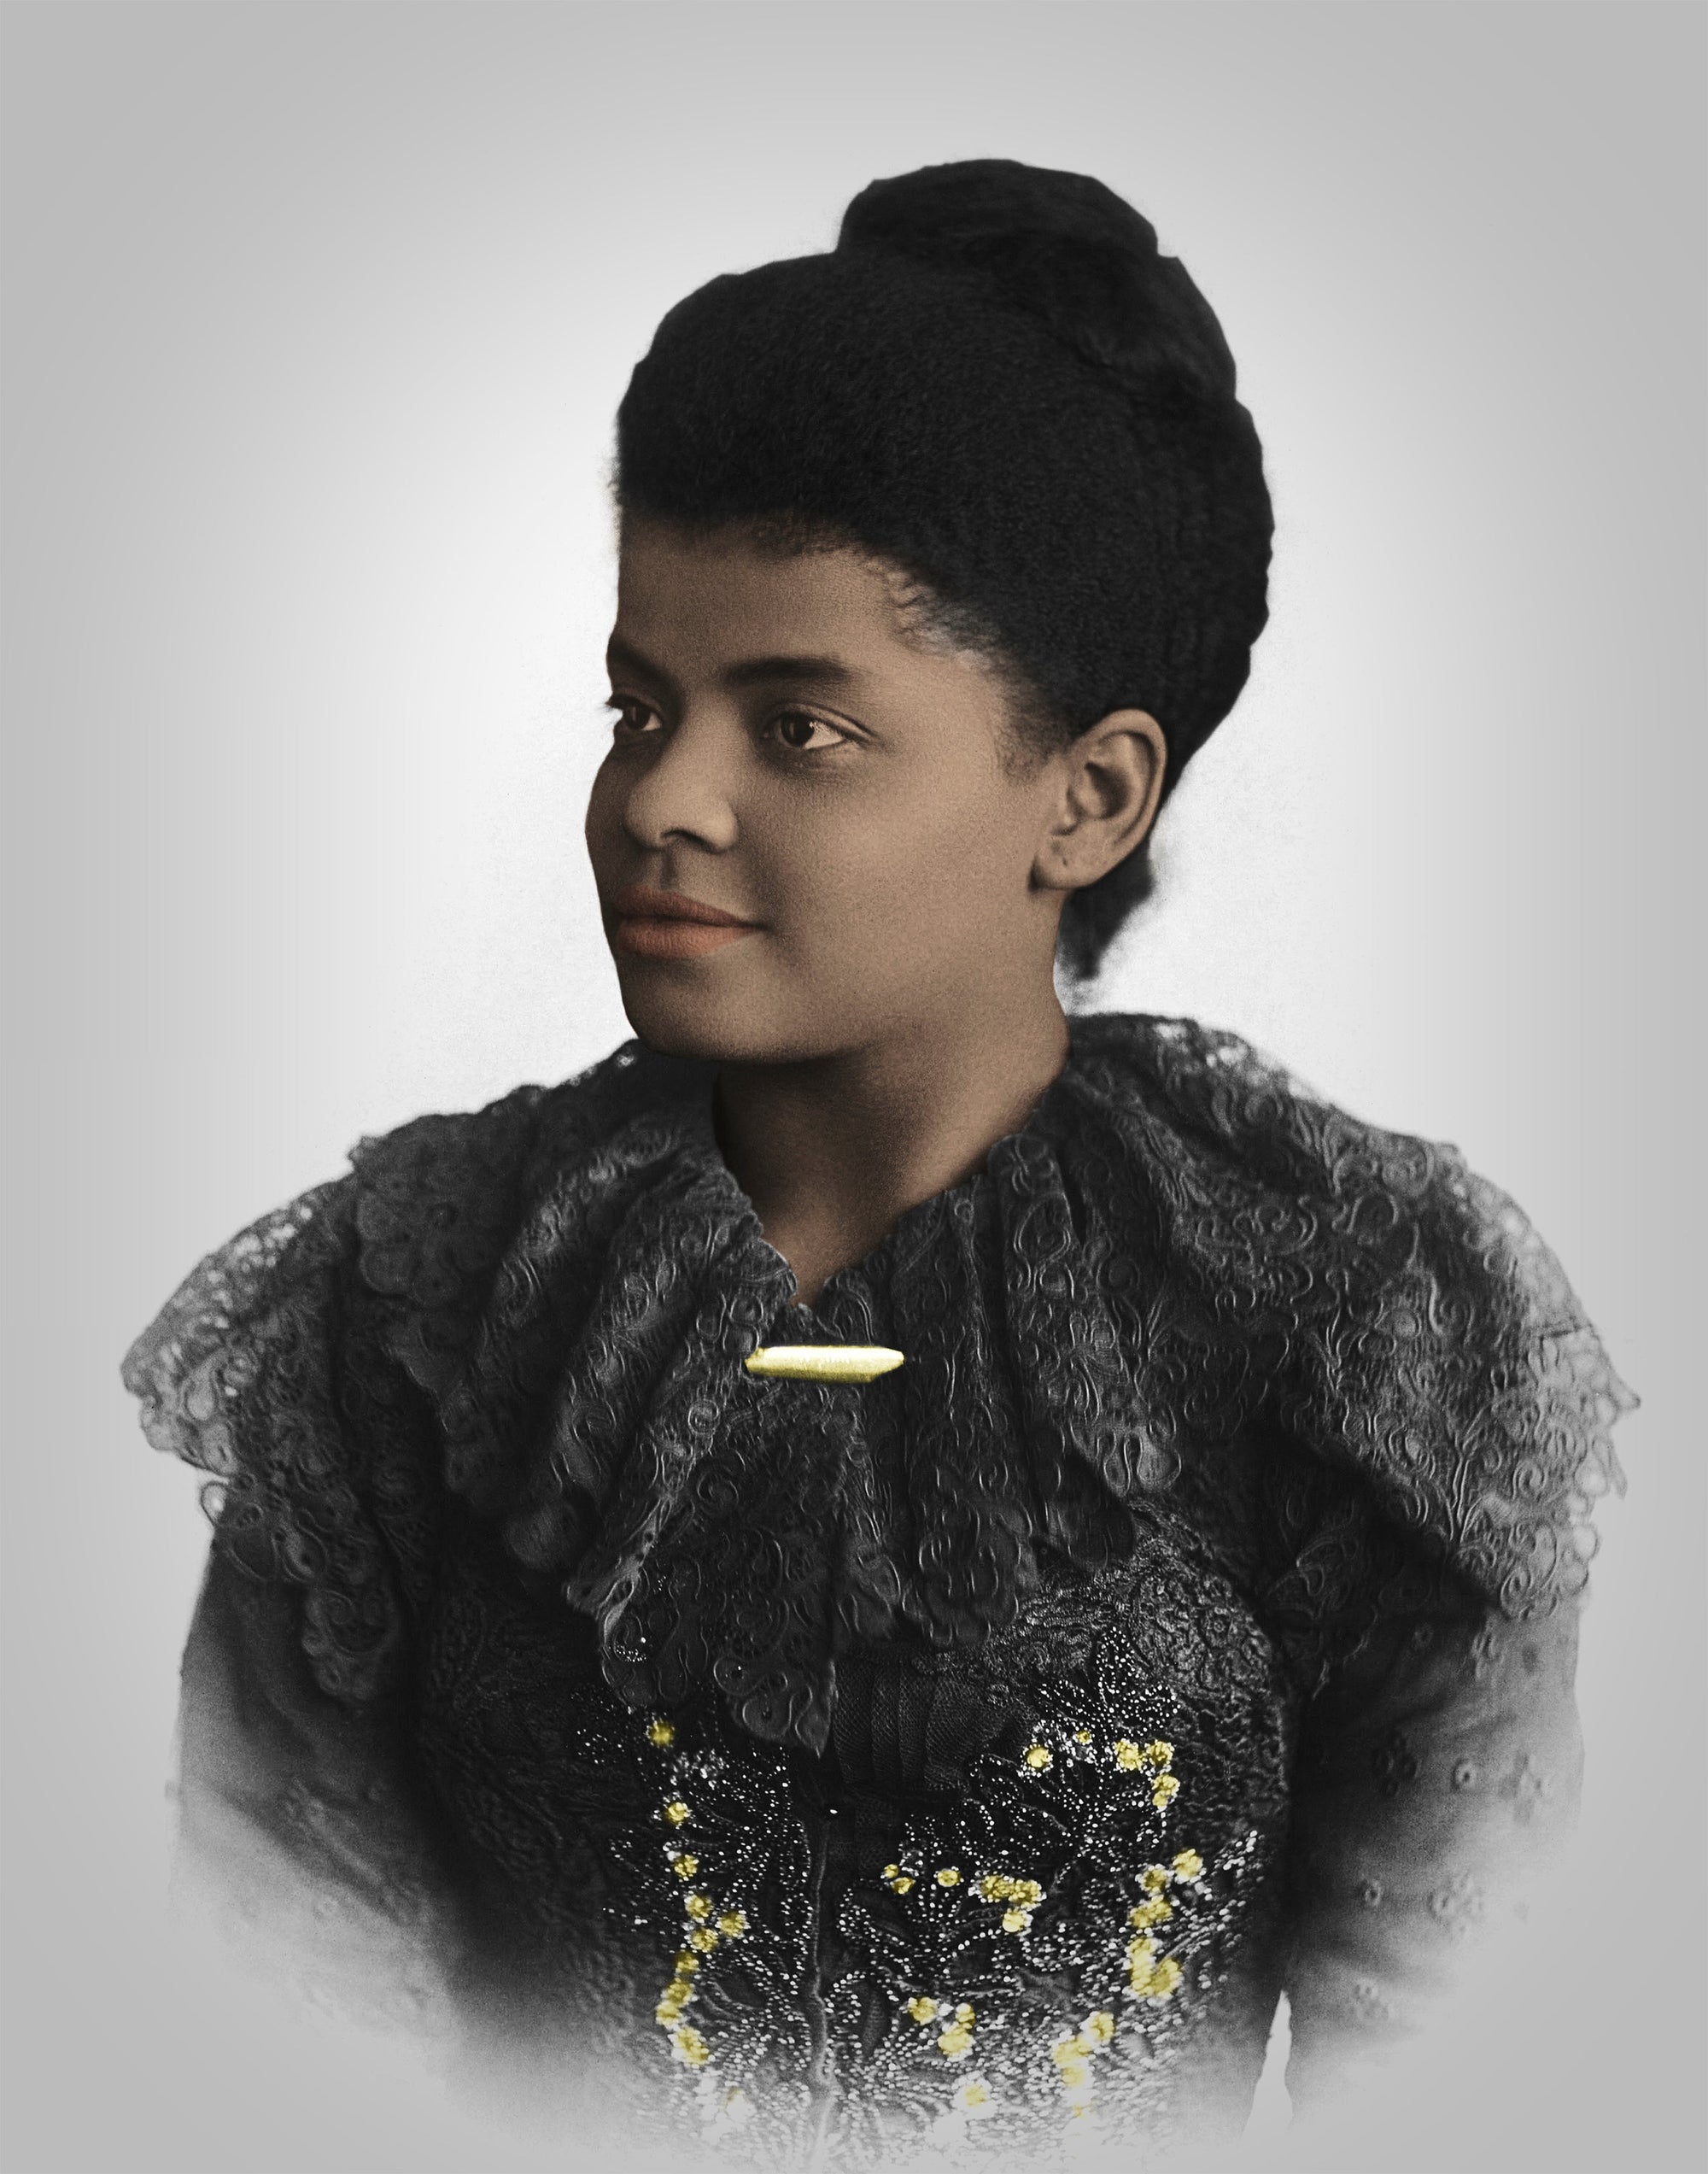 Ida B. Wells Portrait Photo, Journalist, Activist, Abolitionist Historical Pix